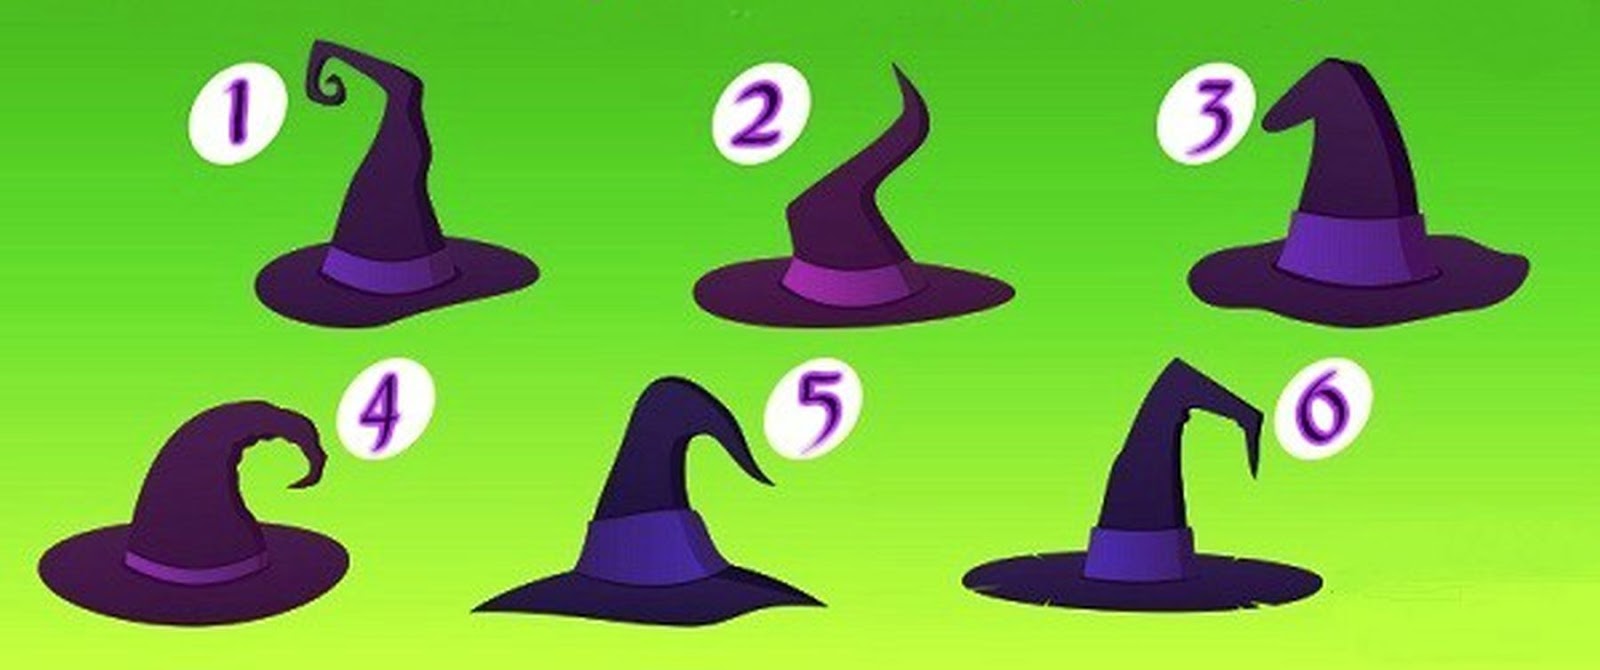 Test hat. Тест на ведьму. Тест для ведьмочек. Как определить колдунью. Тест выбери шляпу.